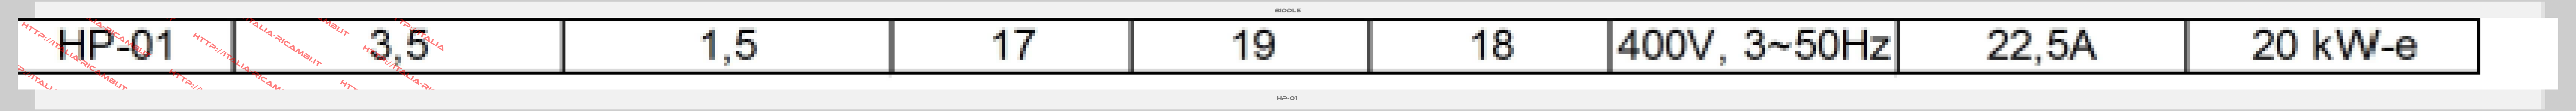 Biddle-HP-01 